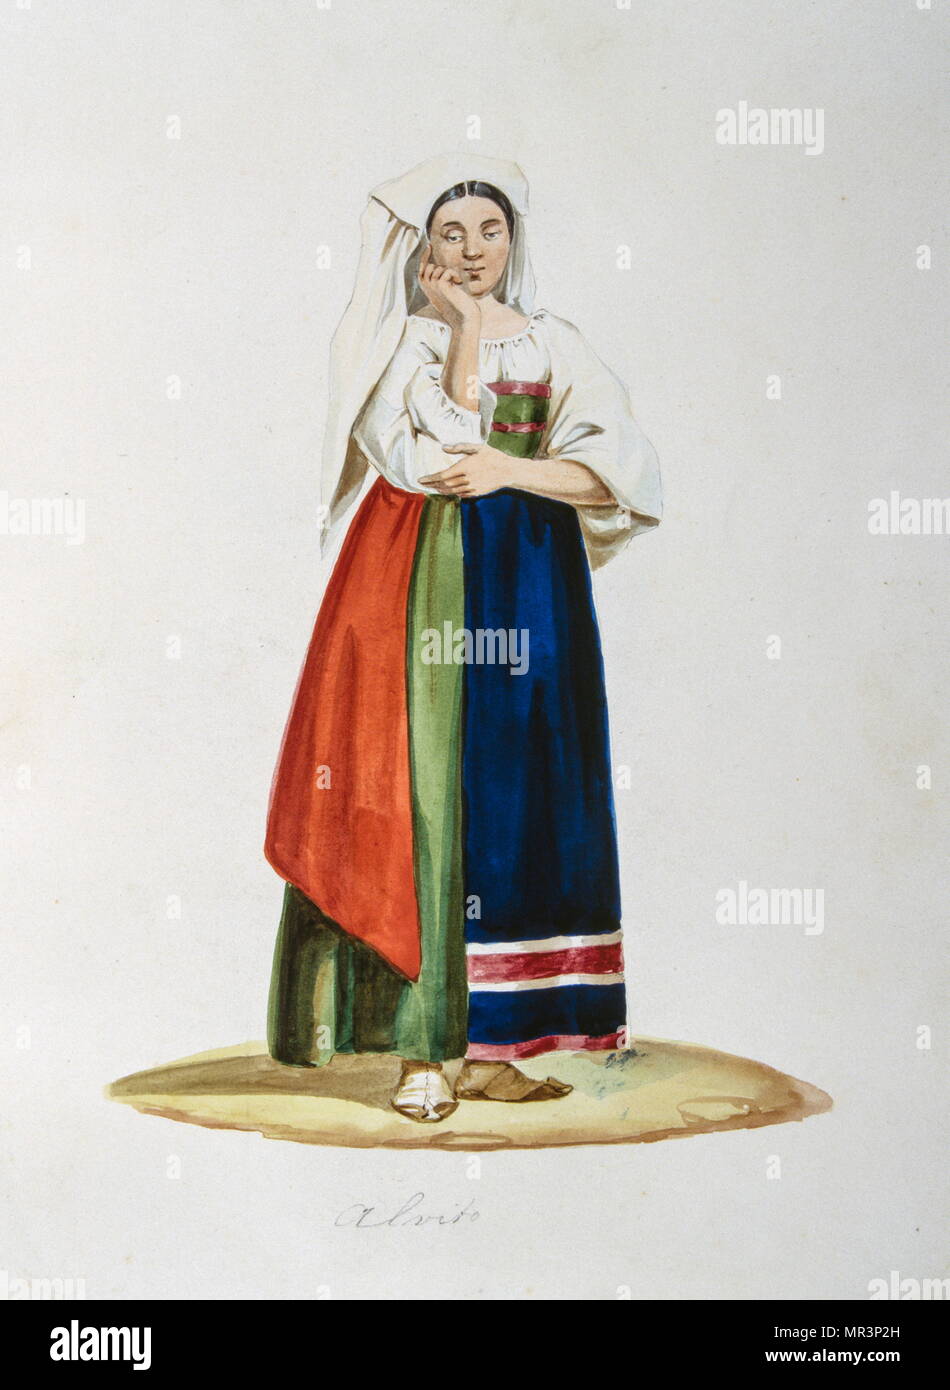 Peinture à la gouache représentant un paysan italien en costume traditionnel. Vers 1850 Banque D'Images